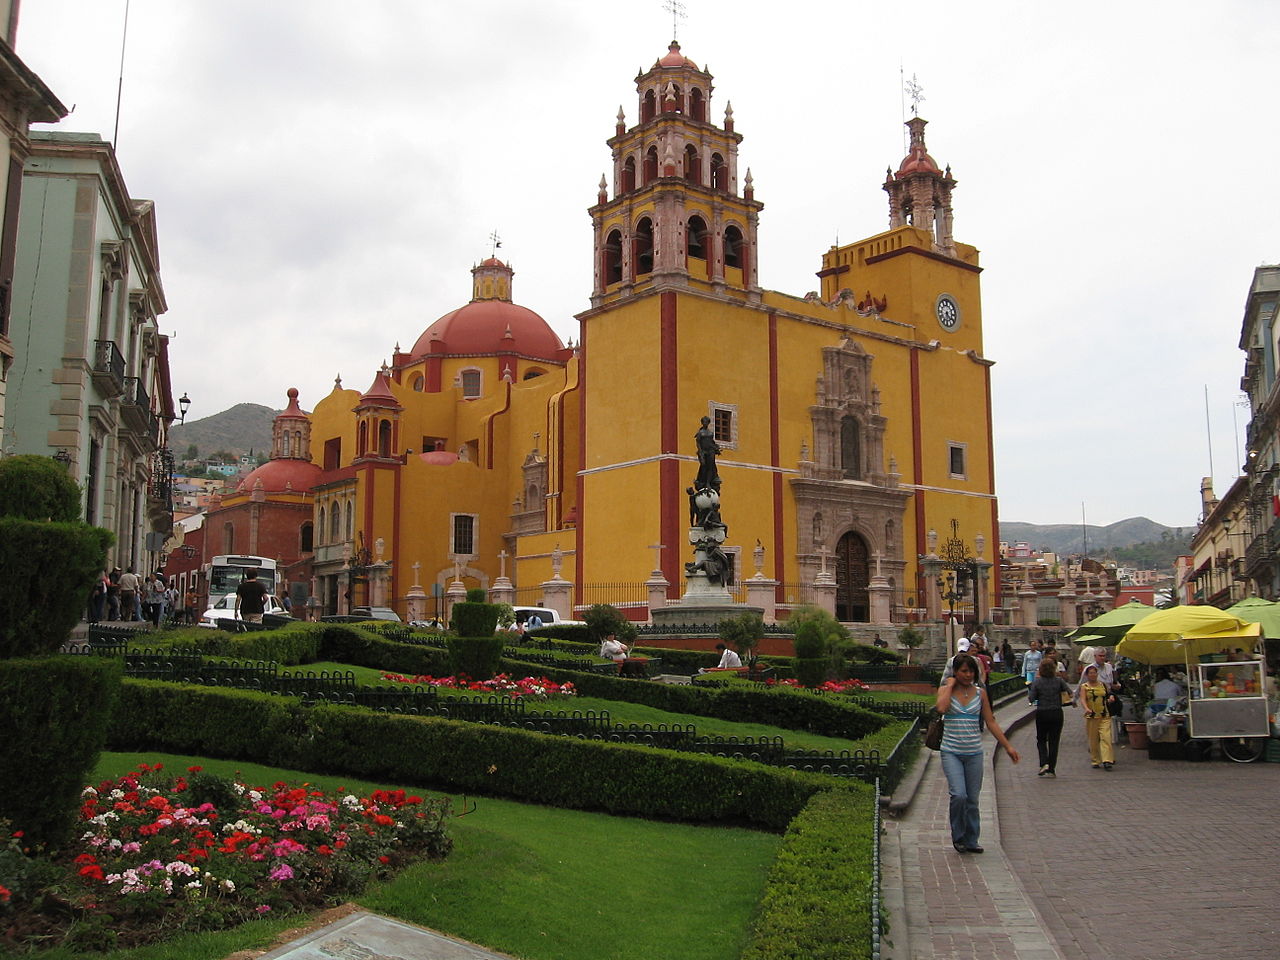 El encanto de Guanajuato: Guanatuajo